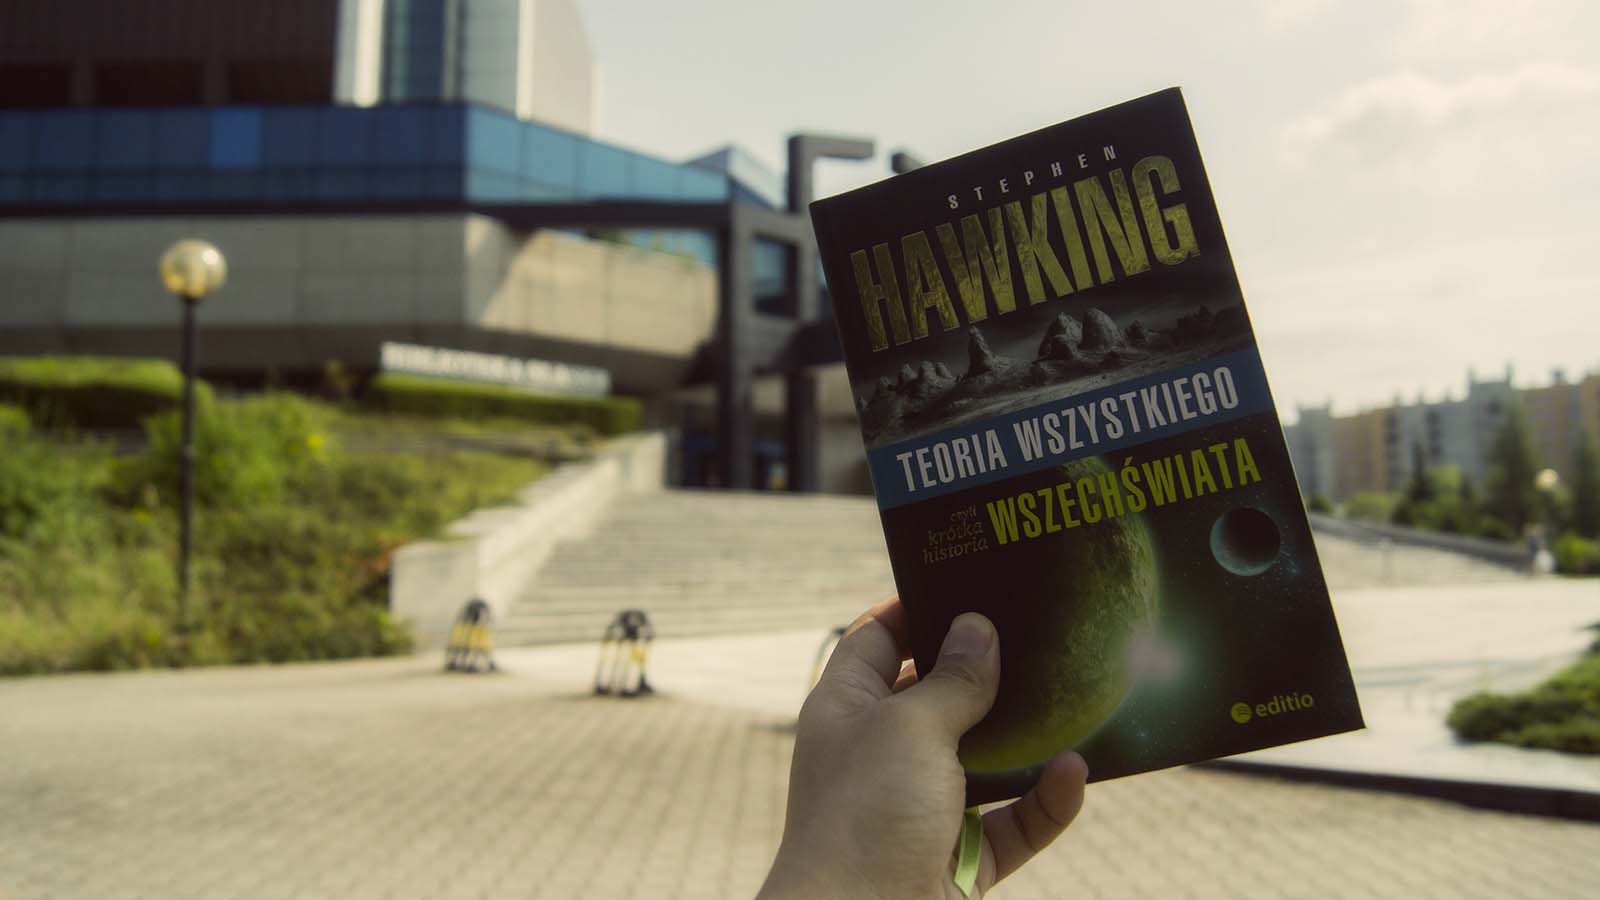 Klasyczny Hawking – recenzja “Teorii wszystkiego, czyli krótkiej historii wszechświata”